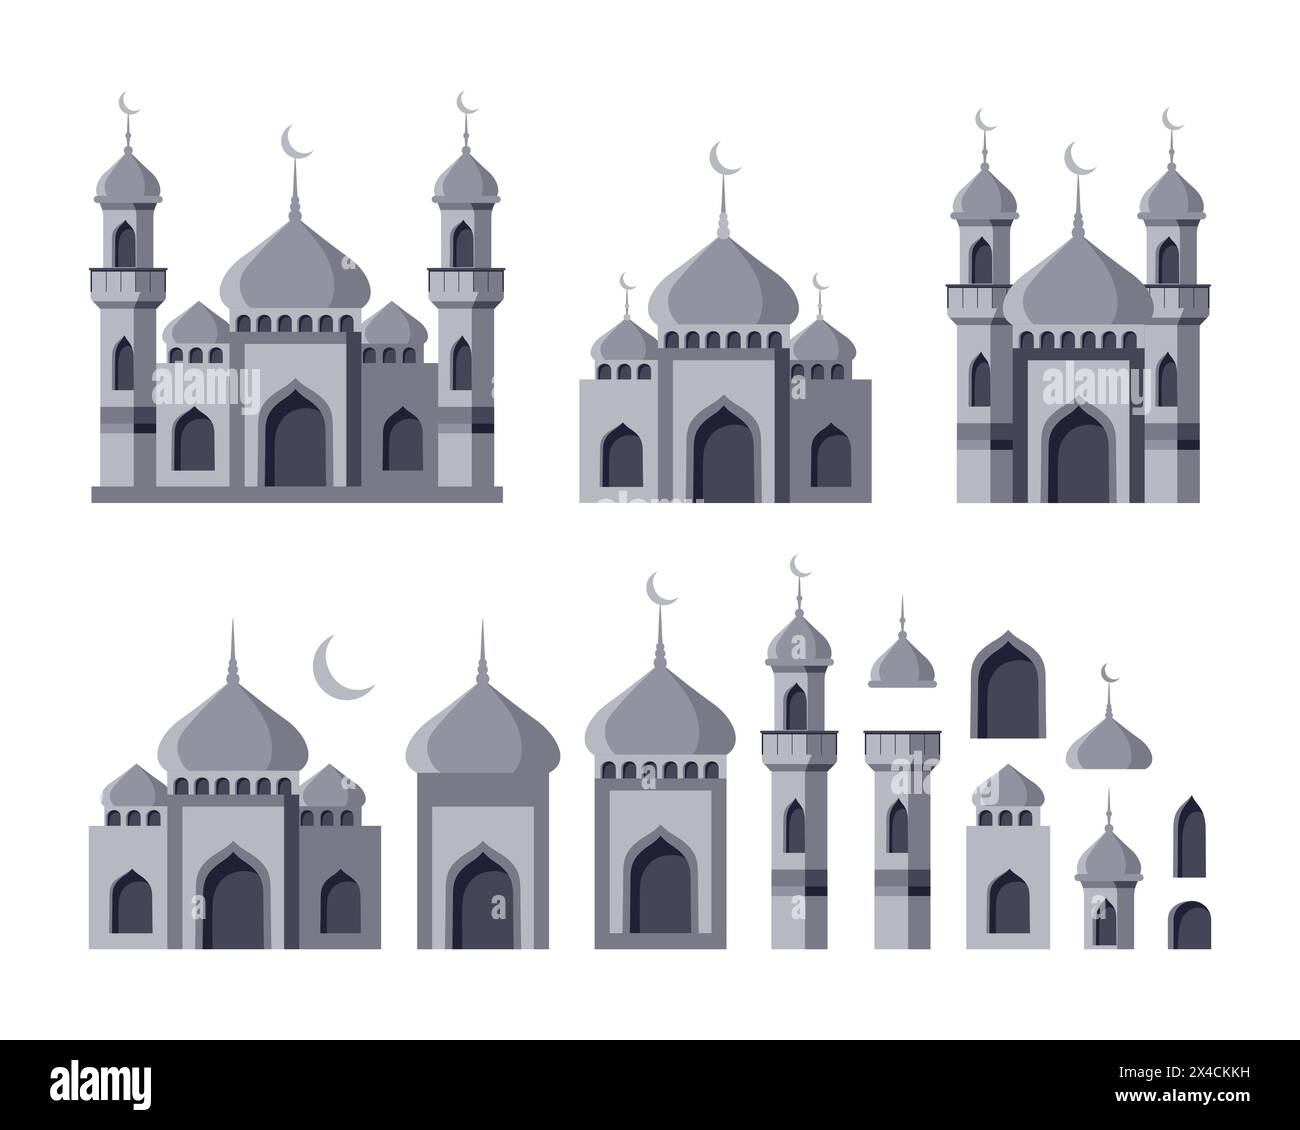 Islamische Moscheen und Minarette mit Kuppel. Sammlung arabischer Architekturelemente. Flacher STYLE. Vektorabbildung. Stock Vektor